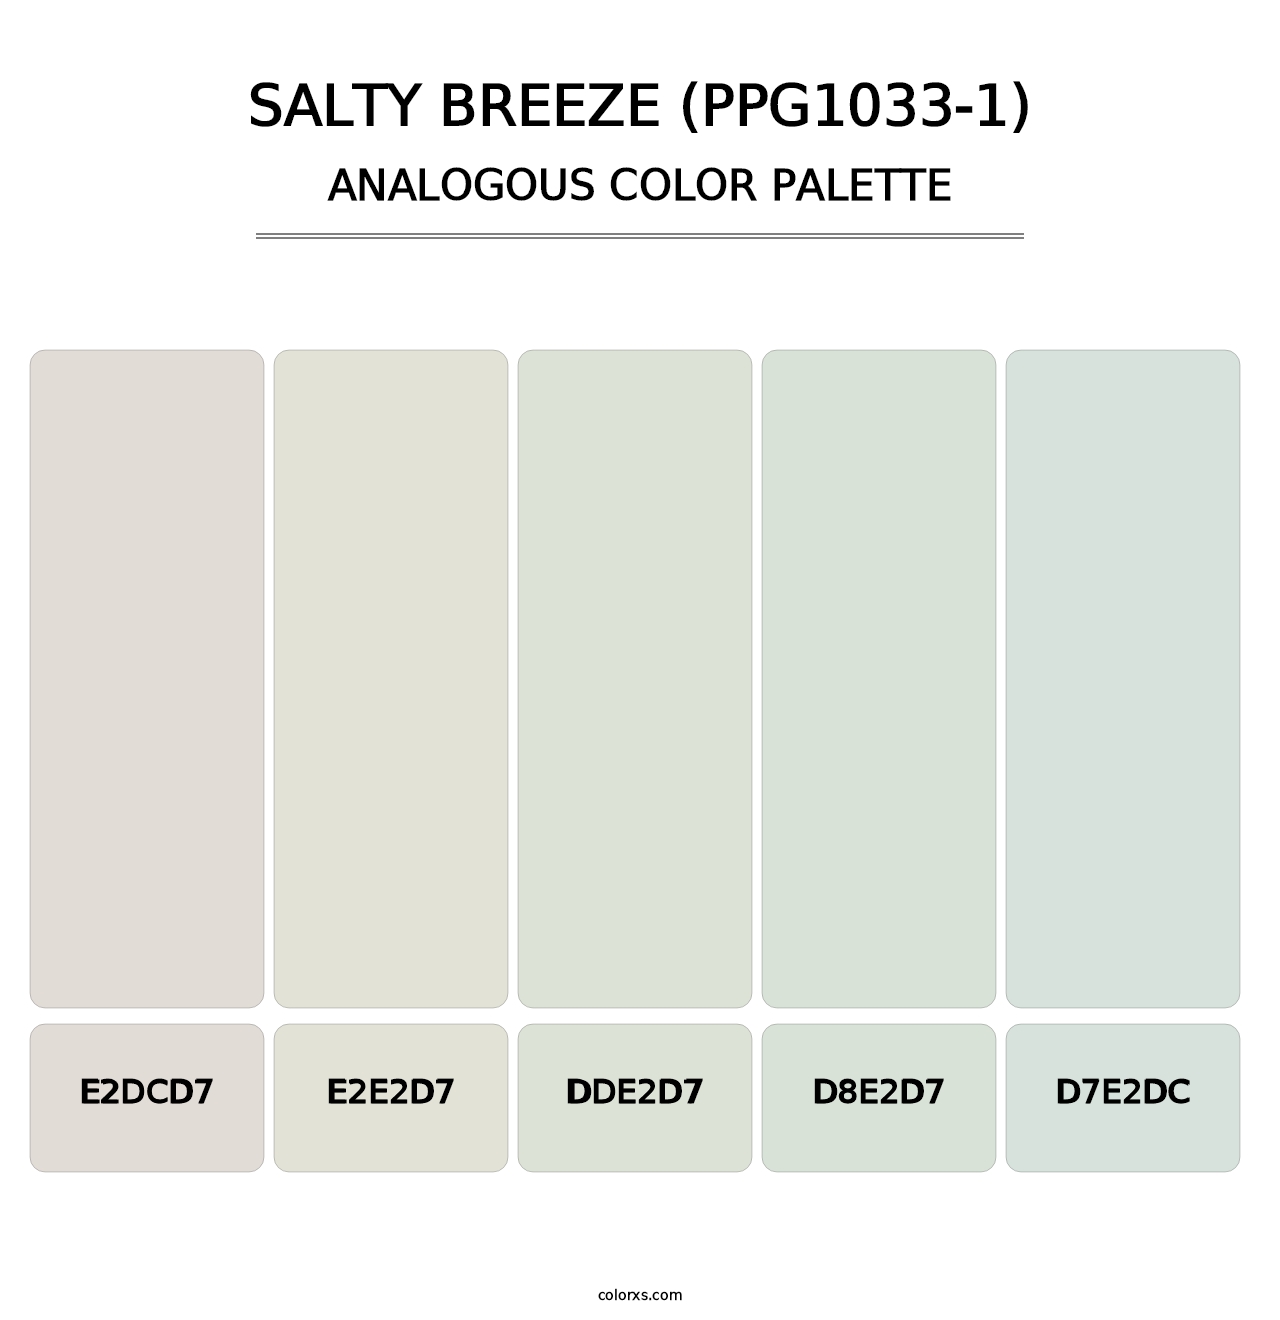 Salty Breeze (PPG1033-1) - Analogous Color Palette